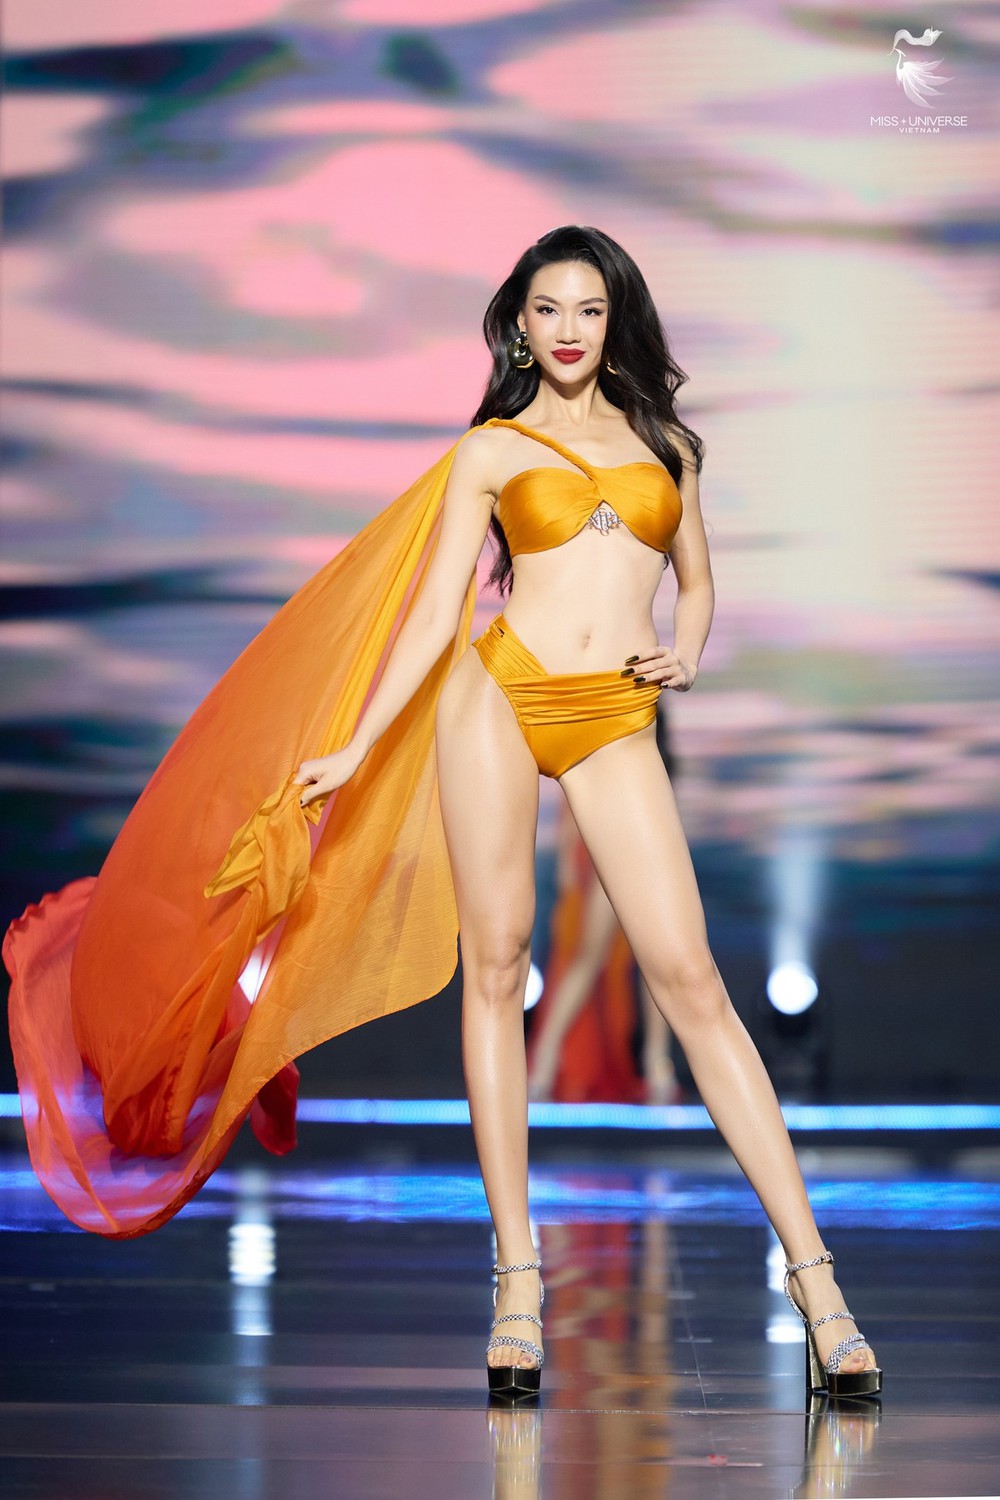 Hoa hậu Bùi Quỳnh Hoa giải thích câu nói ‘Thắng không kiêu, bại không chảnh’, khán giả chê vụng về - Ảnh 1.